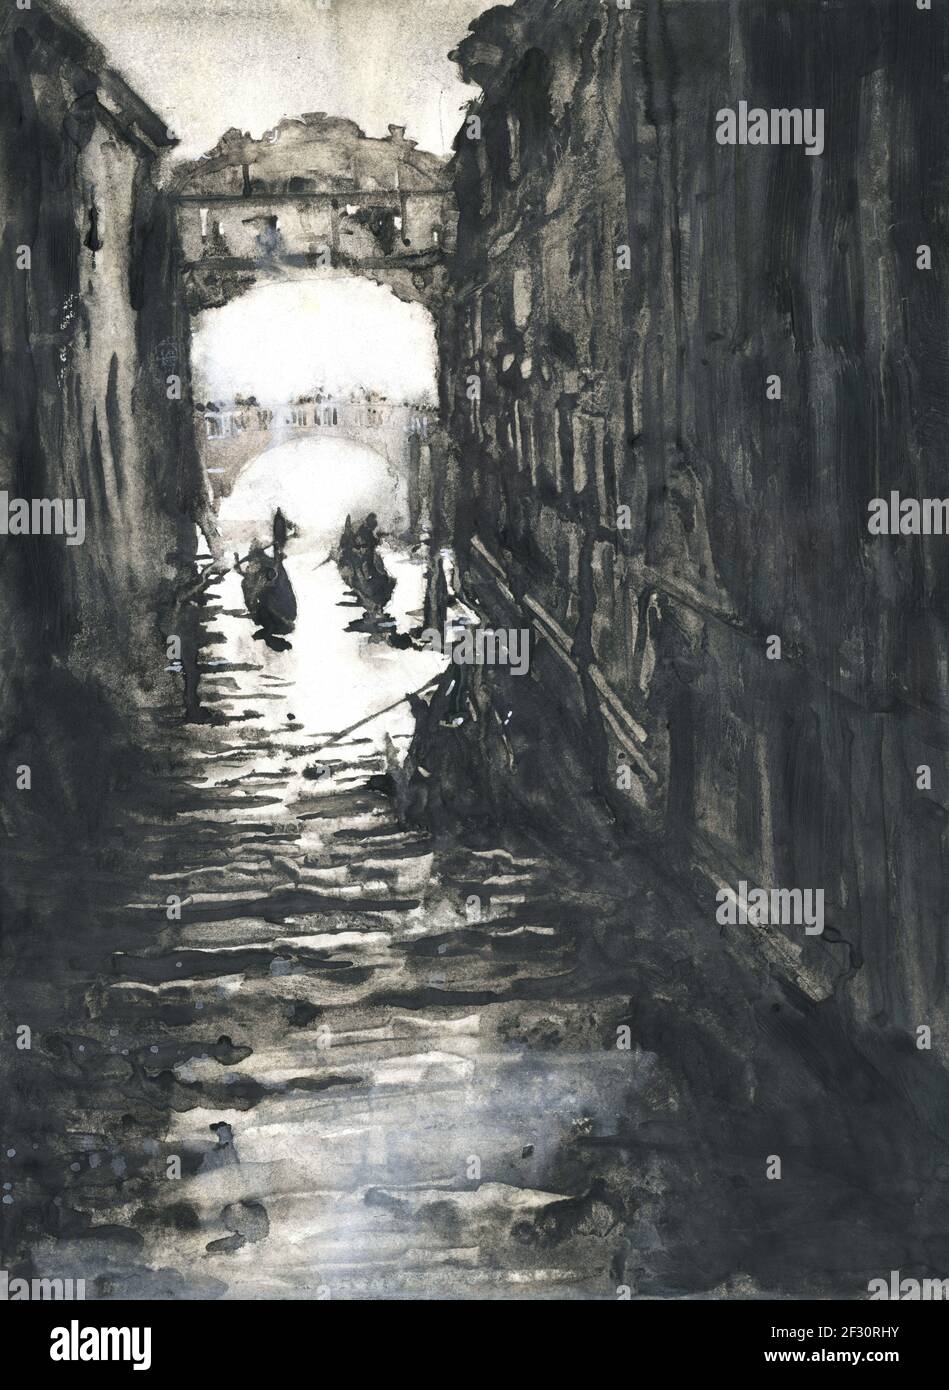 Venise, Italie peinture à l'aquarelle noire blanche. Peinture du pont des Soupirs à Venise, Italie gondoles bateaux art monochromatique Banque D'Images